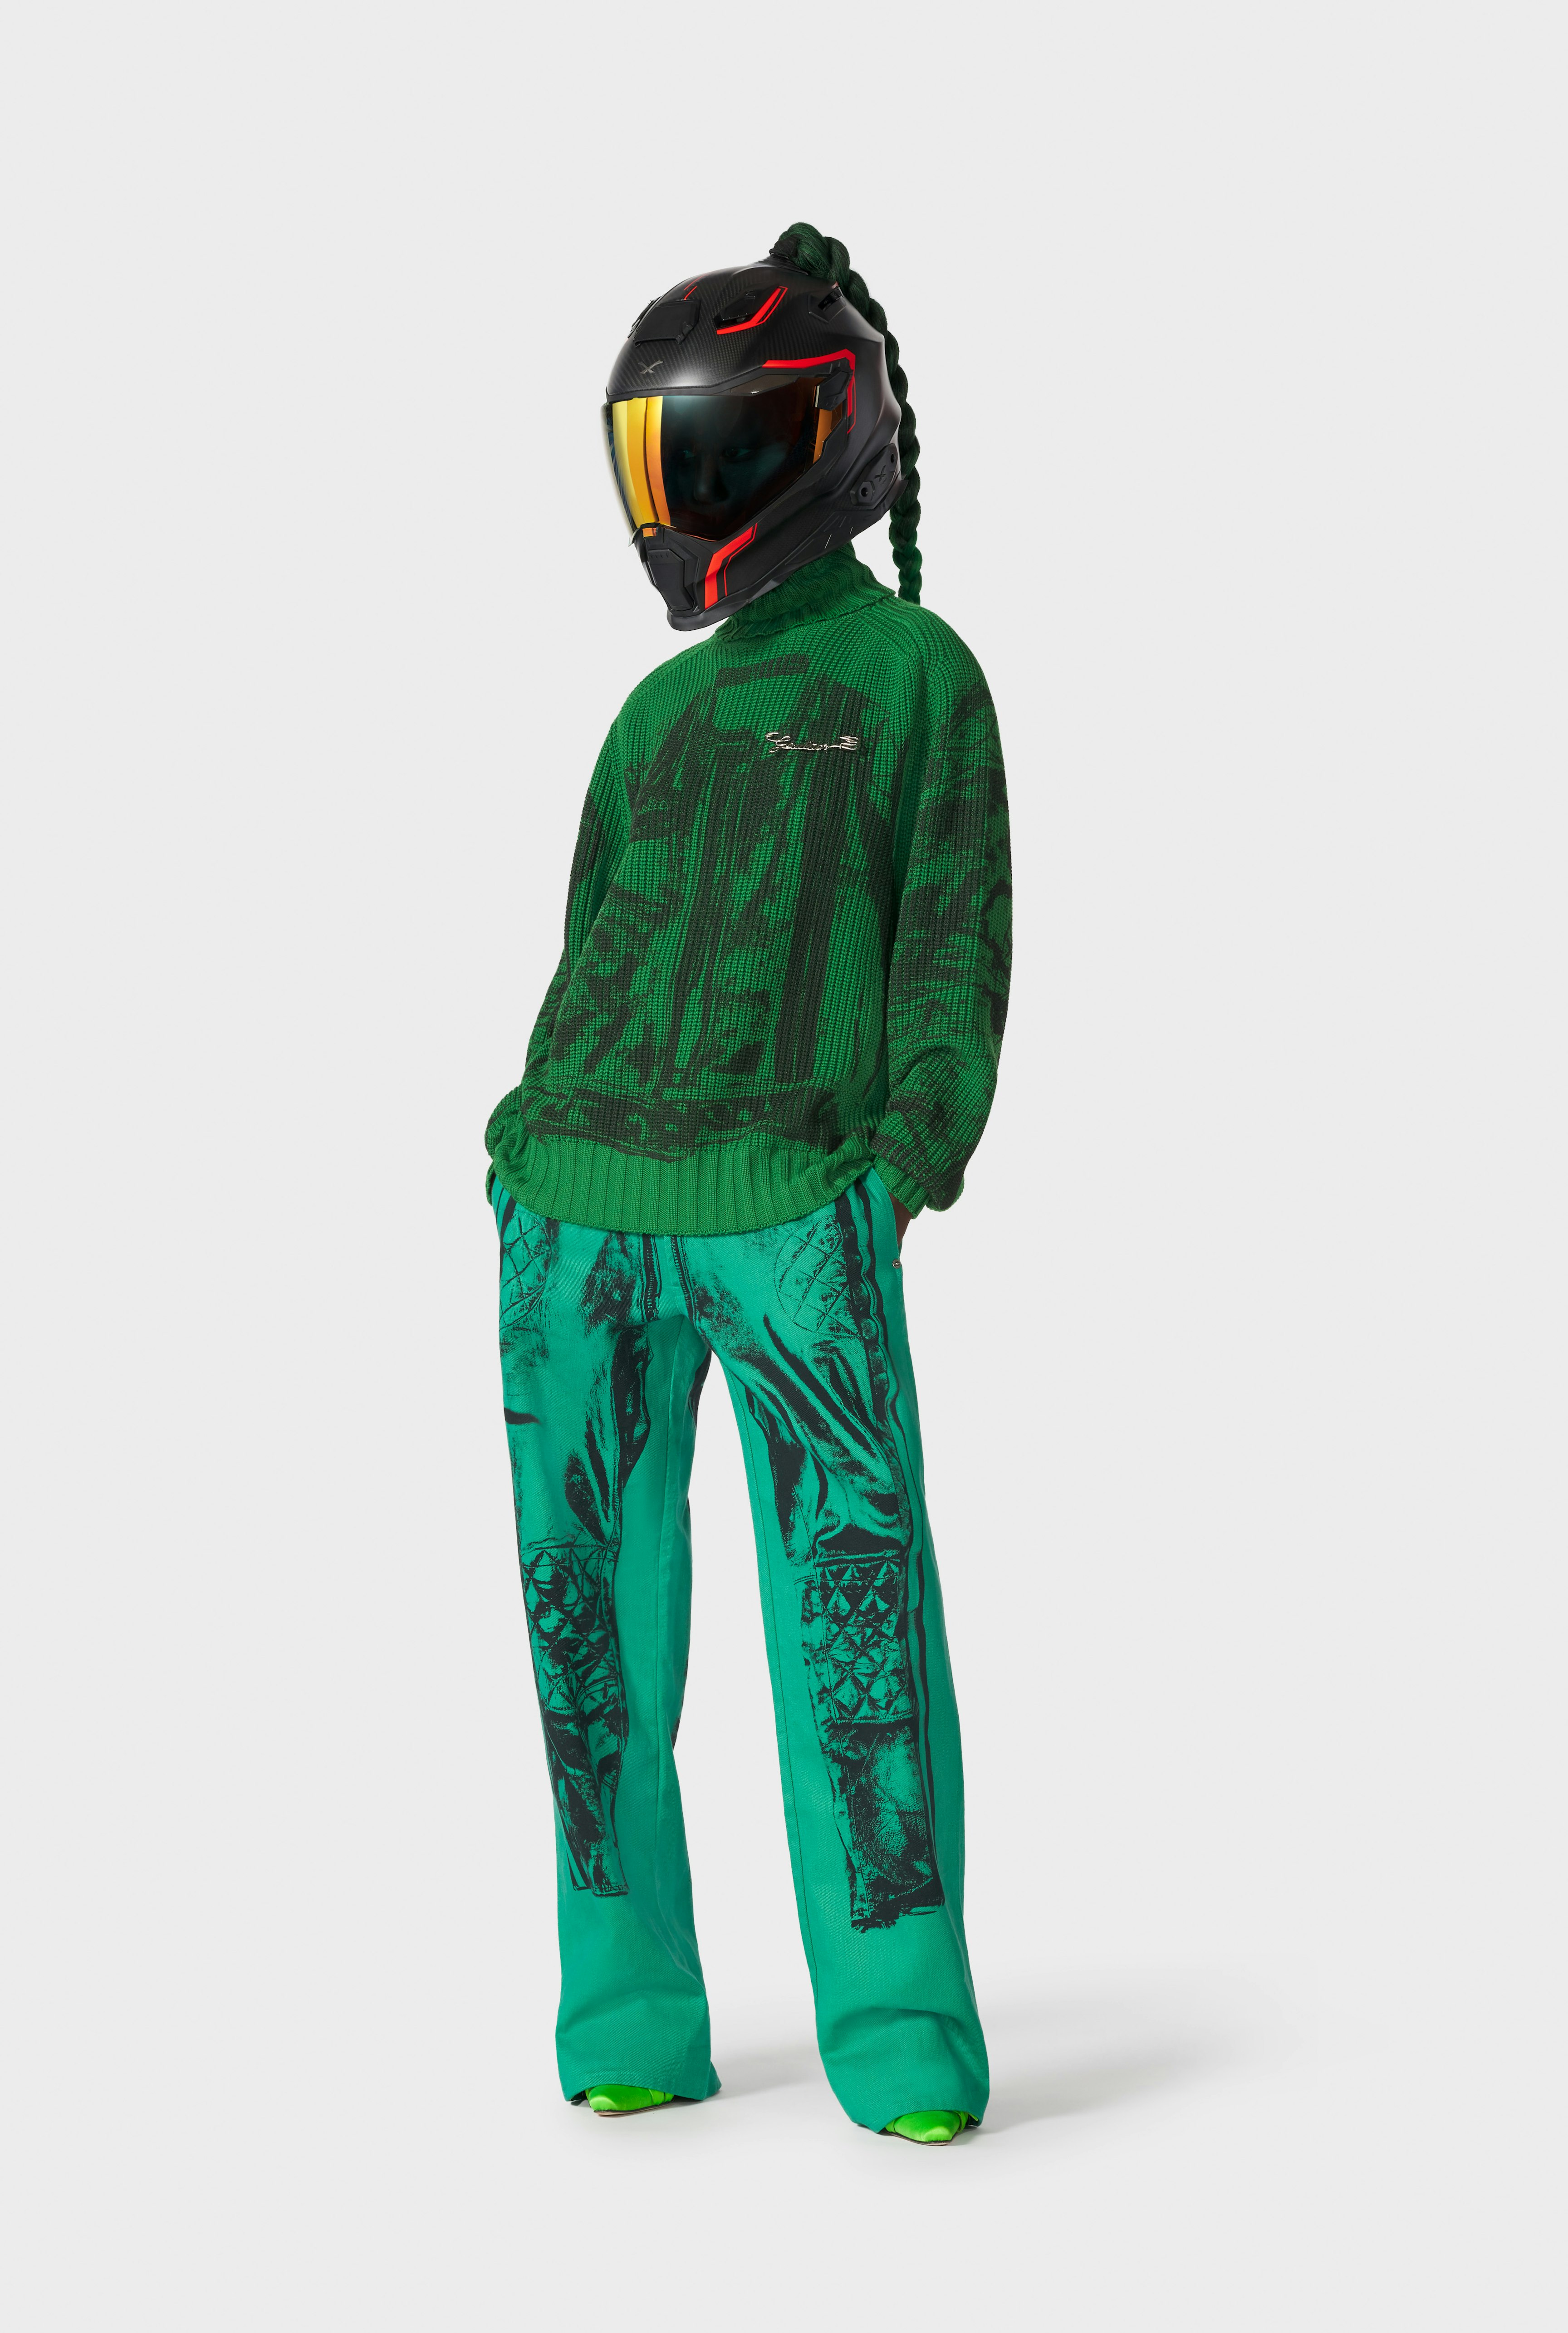 Jean Paul Gaultier x Dover Street Market: The Green Biker Sweater